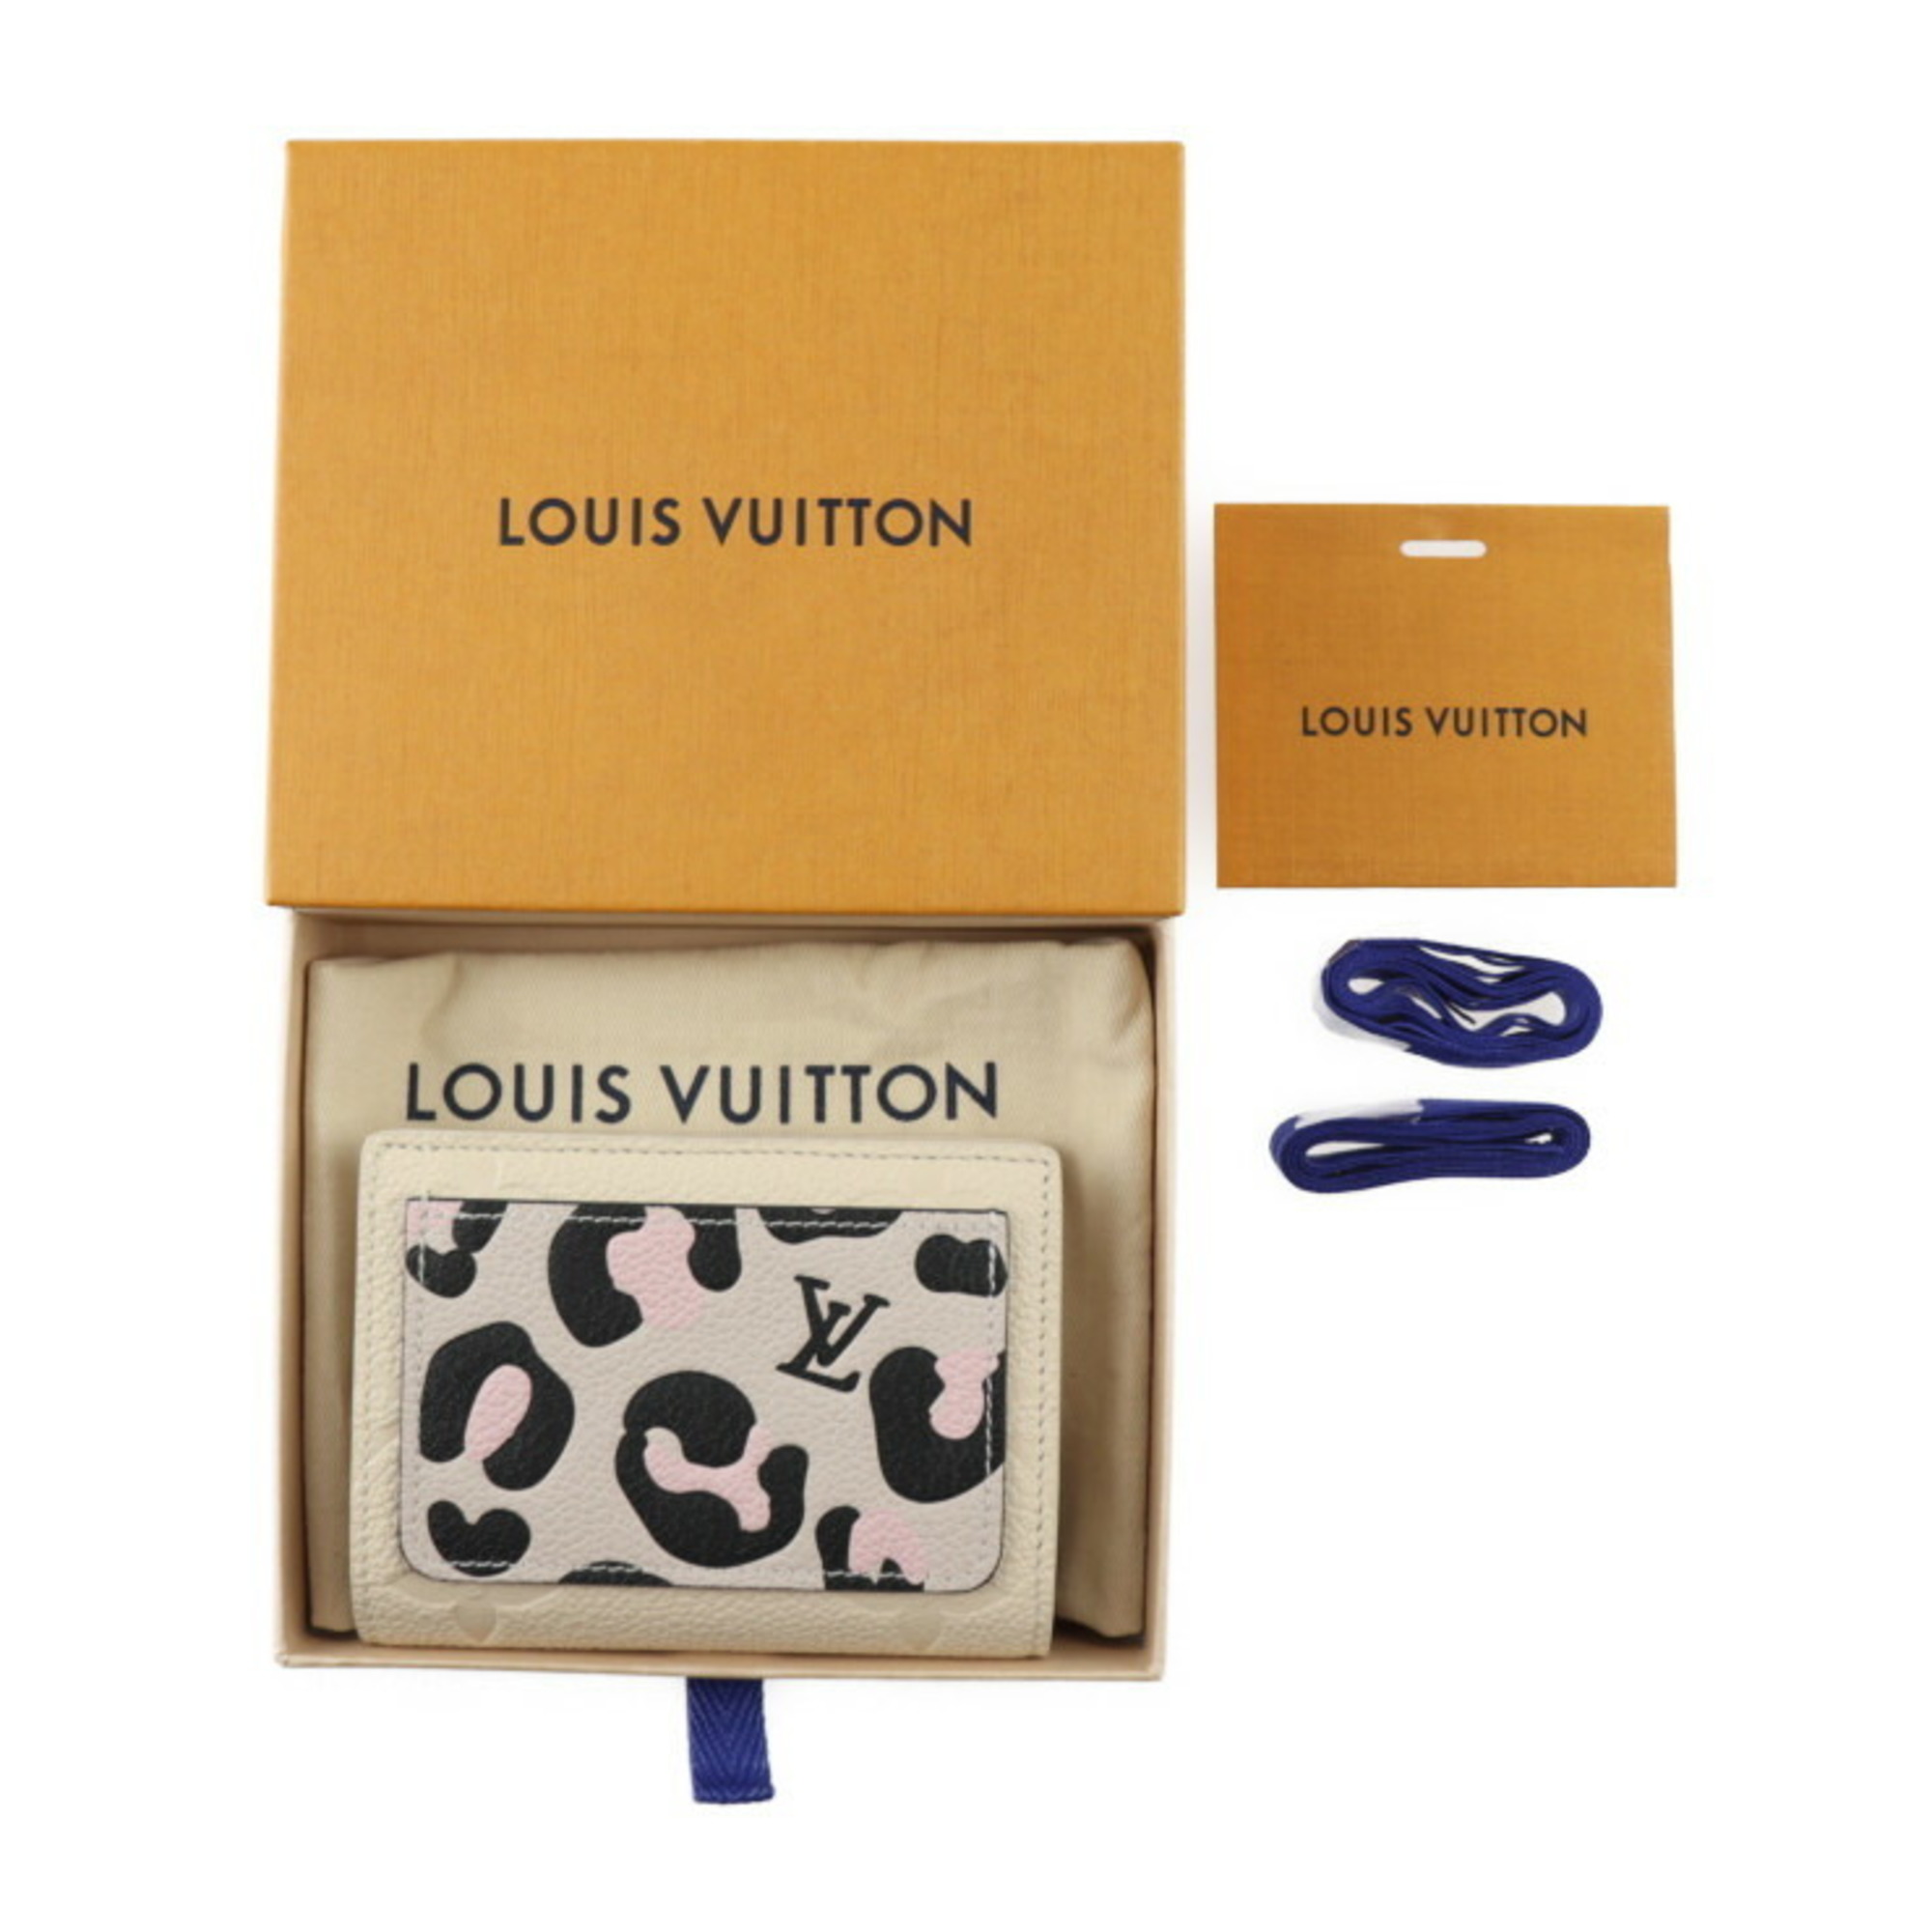 LOUIS VUITTON Portefeuille Wild at Heart Bifold Wallet M80754 Monogram Empreinte Crème Multicolor Vuitton